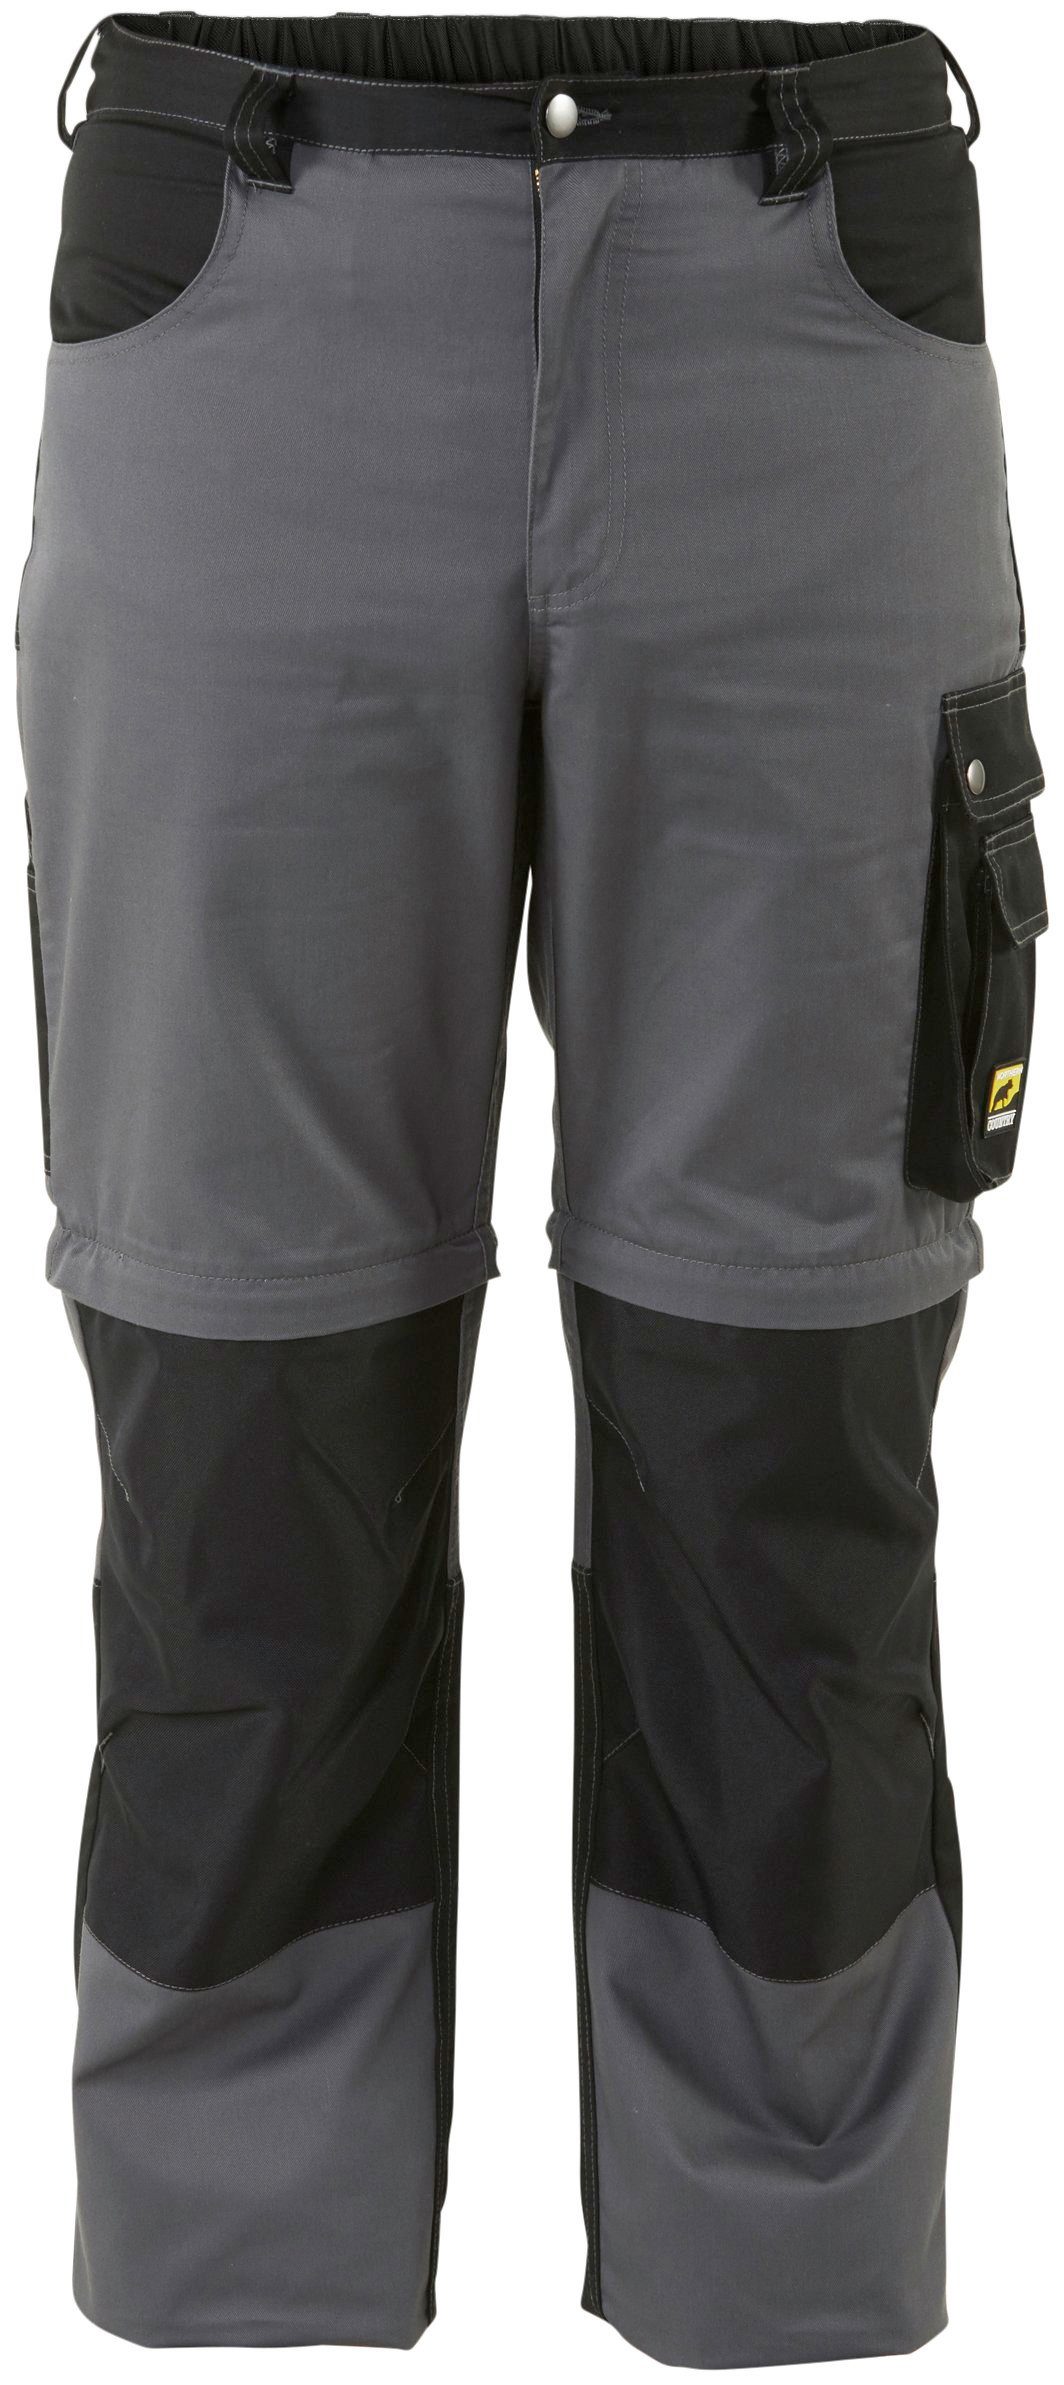 8 Arbeitshose möglich, Shorts und einem Funktion: Worker in Arbeitshose lange Kniebereich, Beinverlängerung Zipp-off Taschen) mit (verstärkter Northern Country